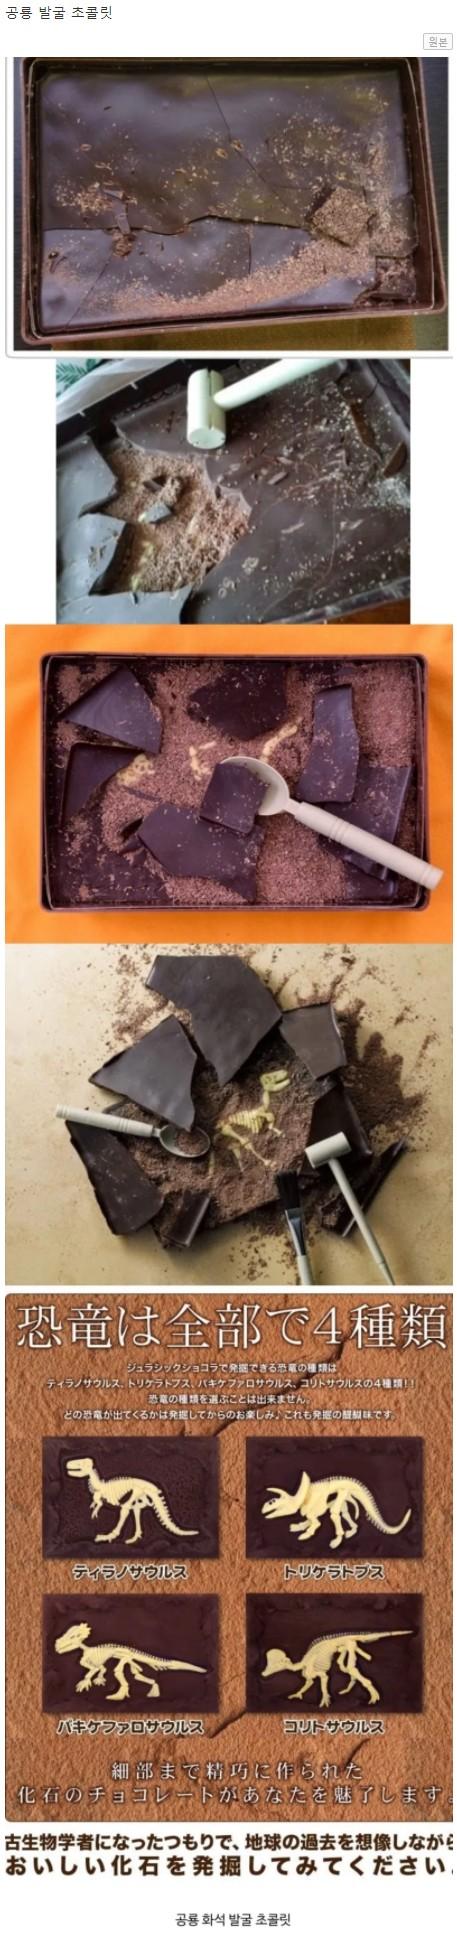 일본의 신박한 초콜릿.jpg